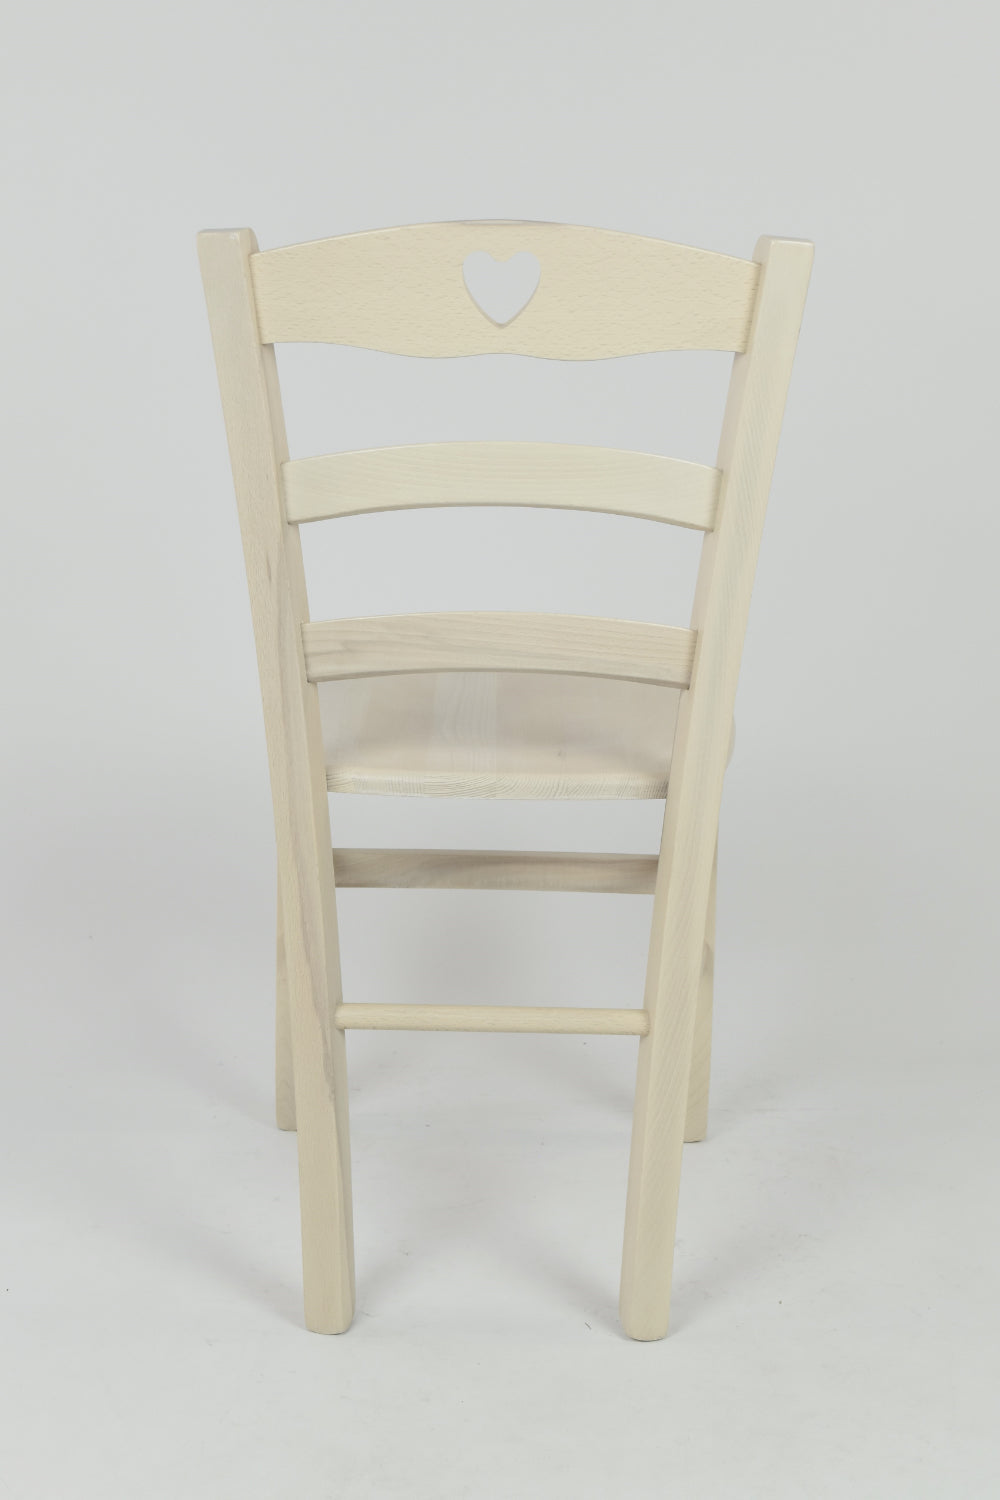 Tommychairs - Set 4 sillas de Cocina y Comedor Cuore, Estructura en Madera de Haya Color anilina Blanca y Asiento en Madera